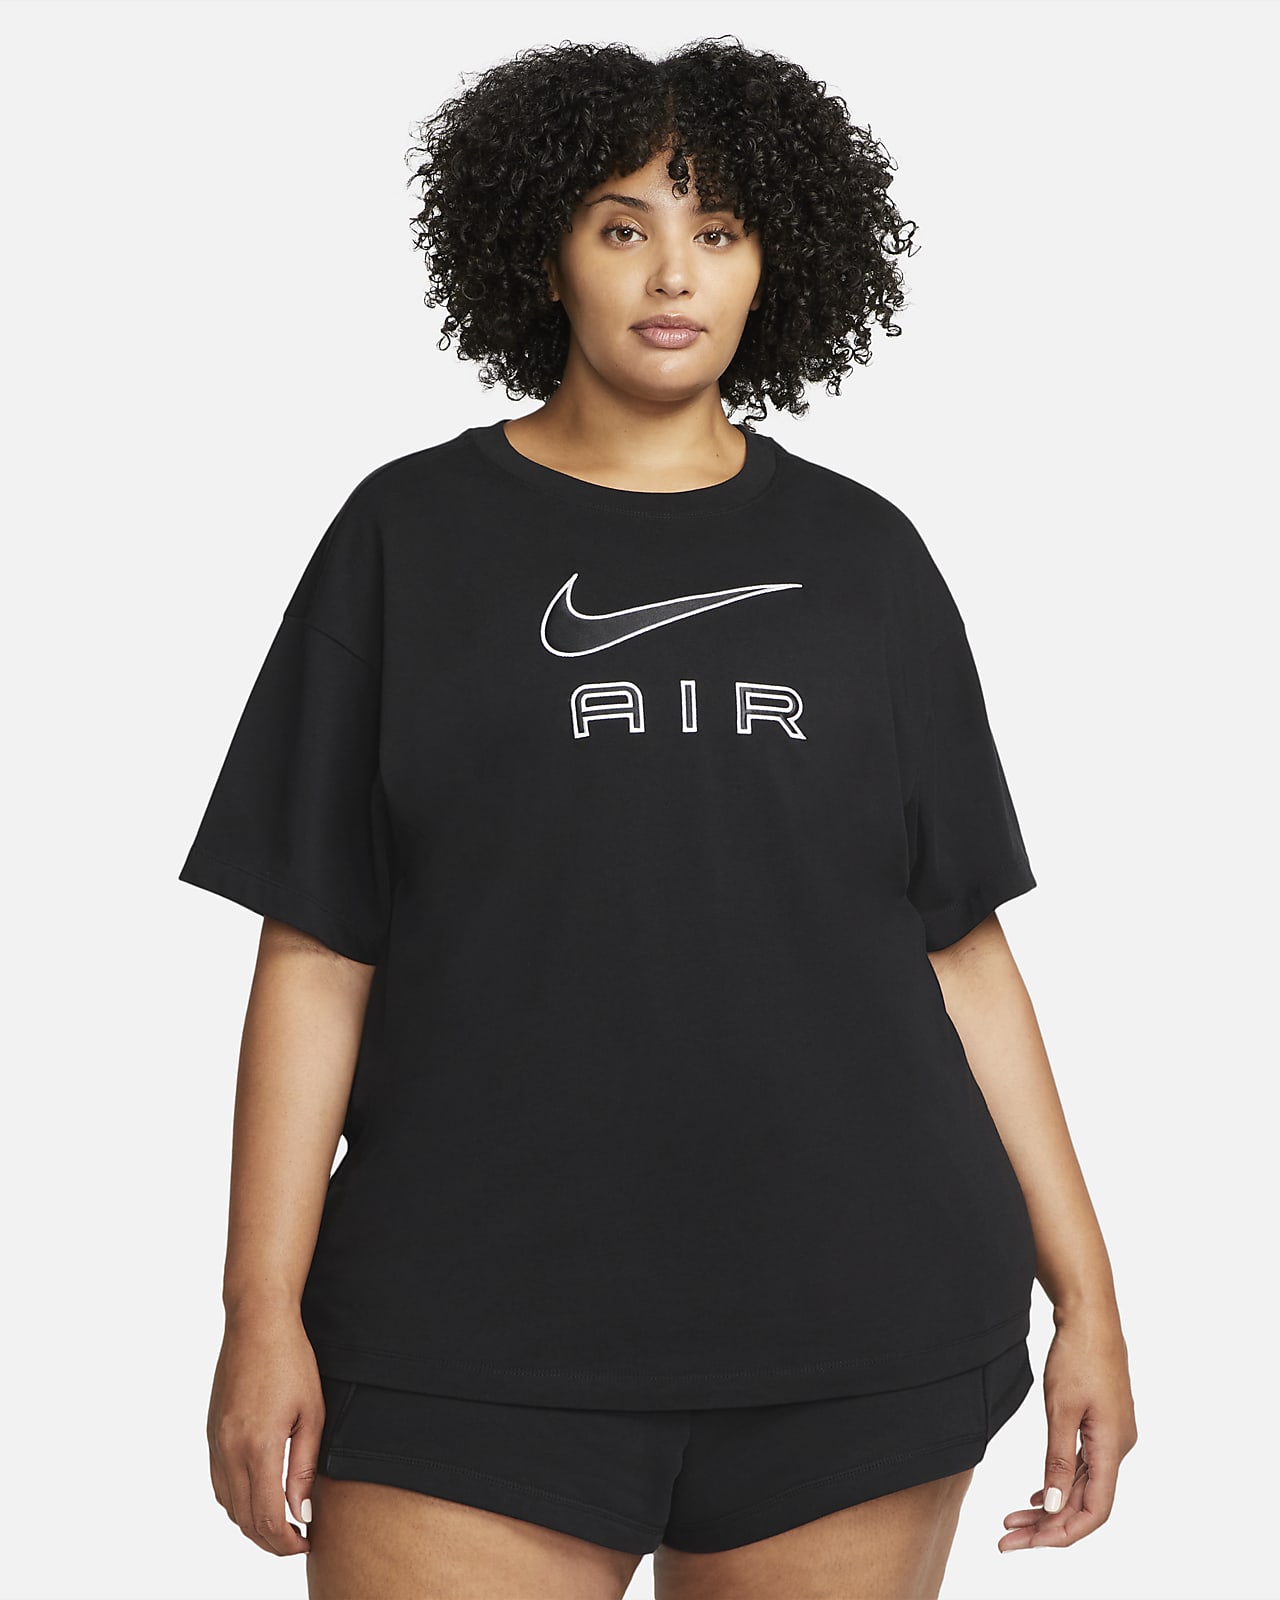 Nike Air Damen-T-Shirt (große Größe)